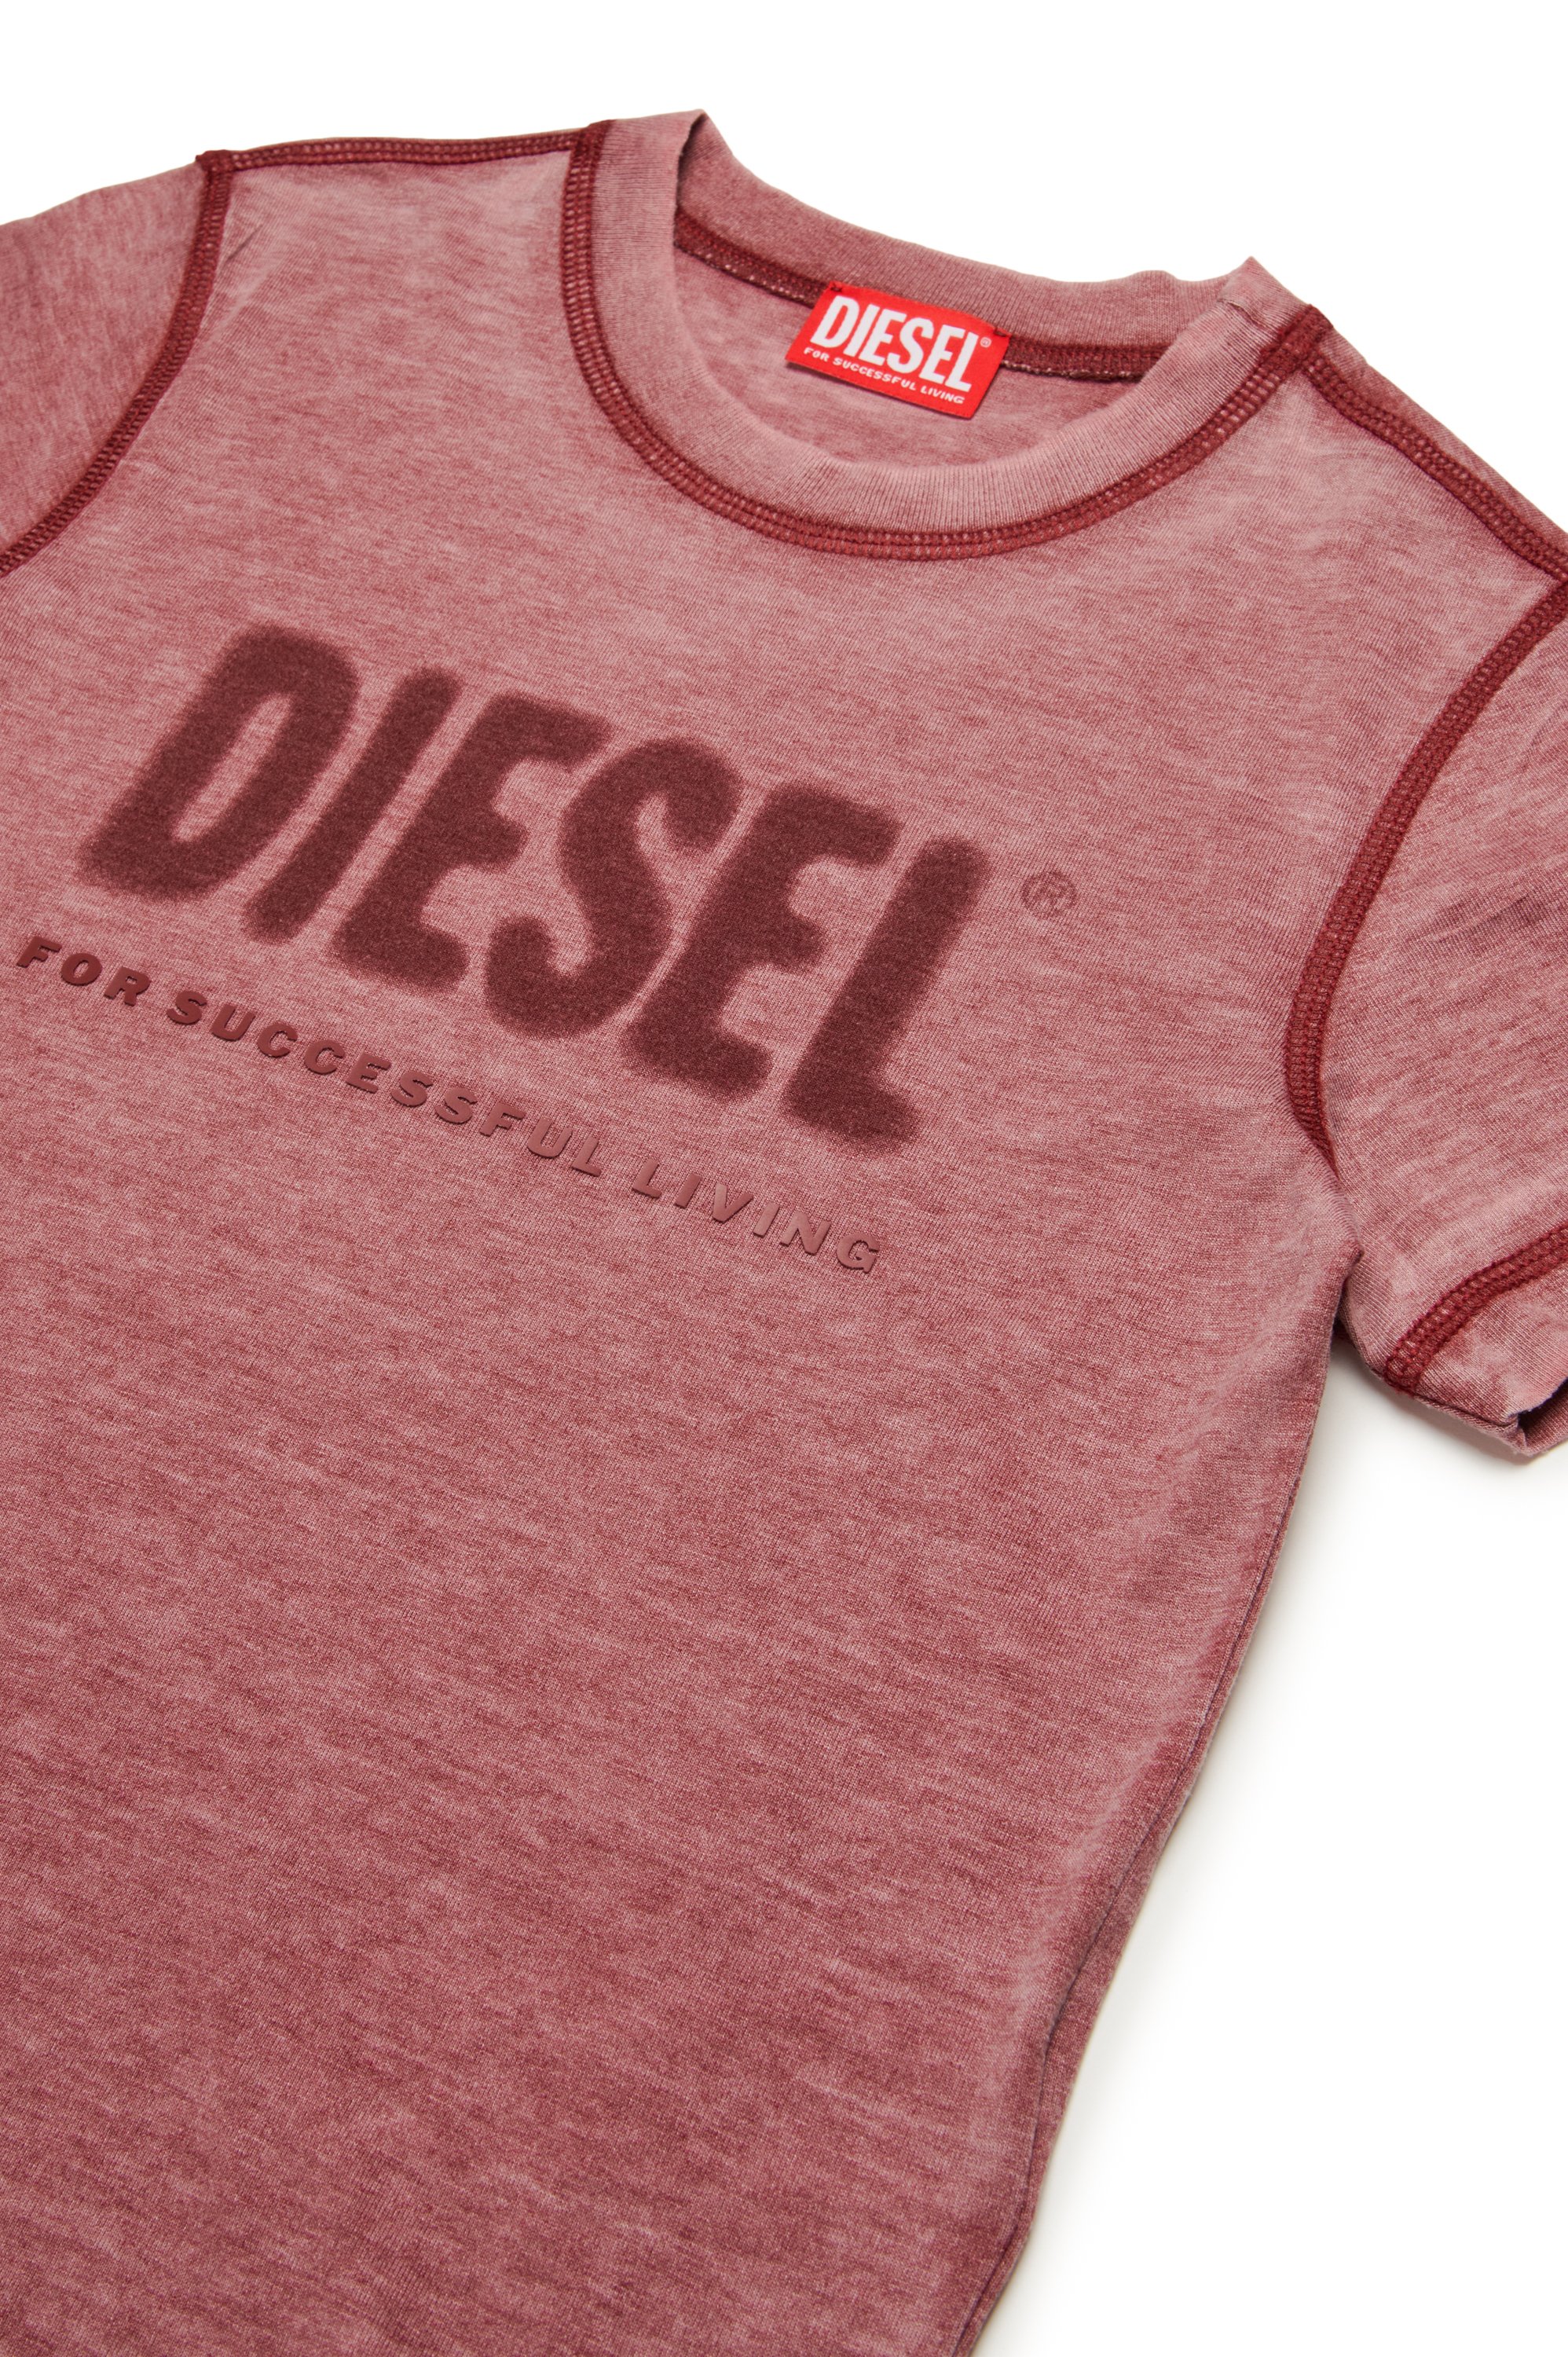 Diesel - TDIEGORL1, Herren Burnout-T-Shirt mit Logo in Rot - Image 3